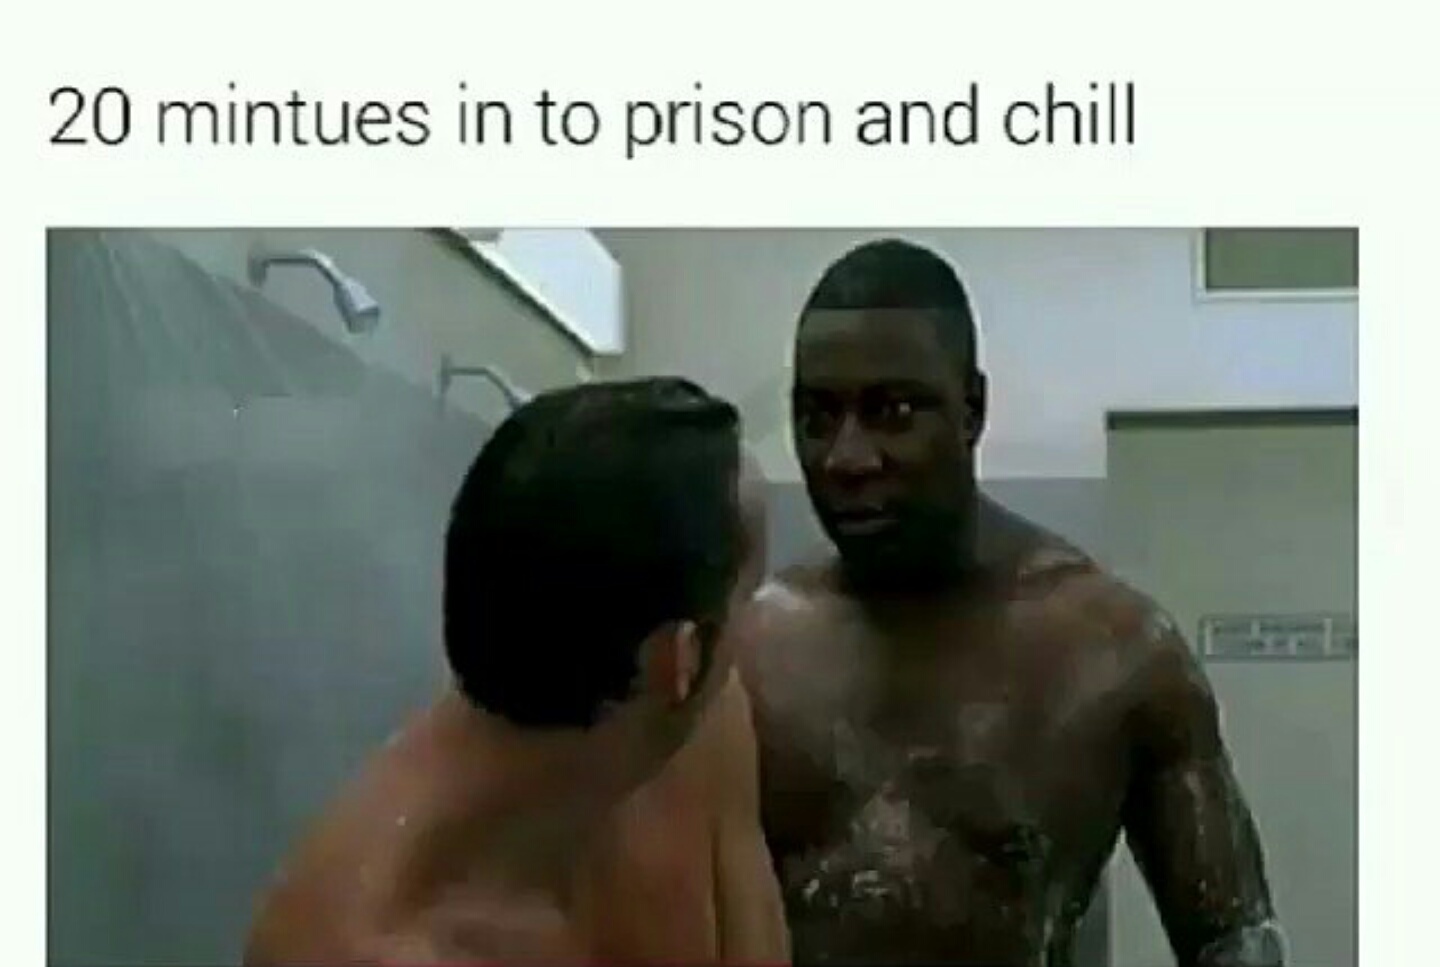 Prison and chill.  Ddddrop the soap - meme